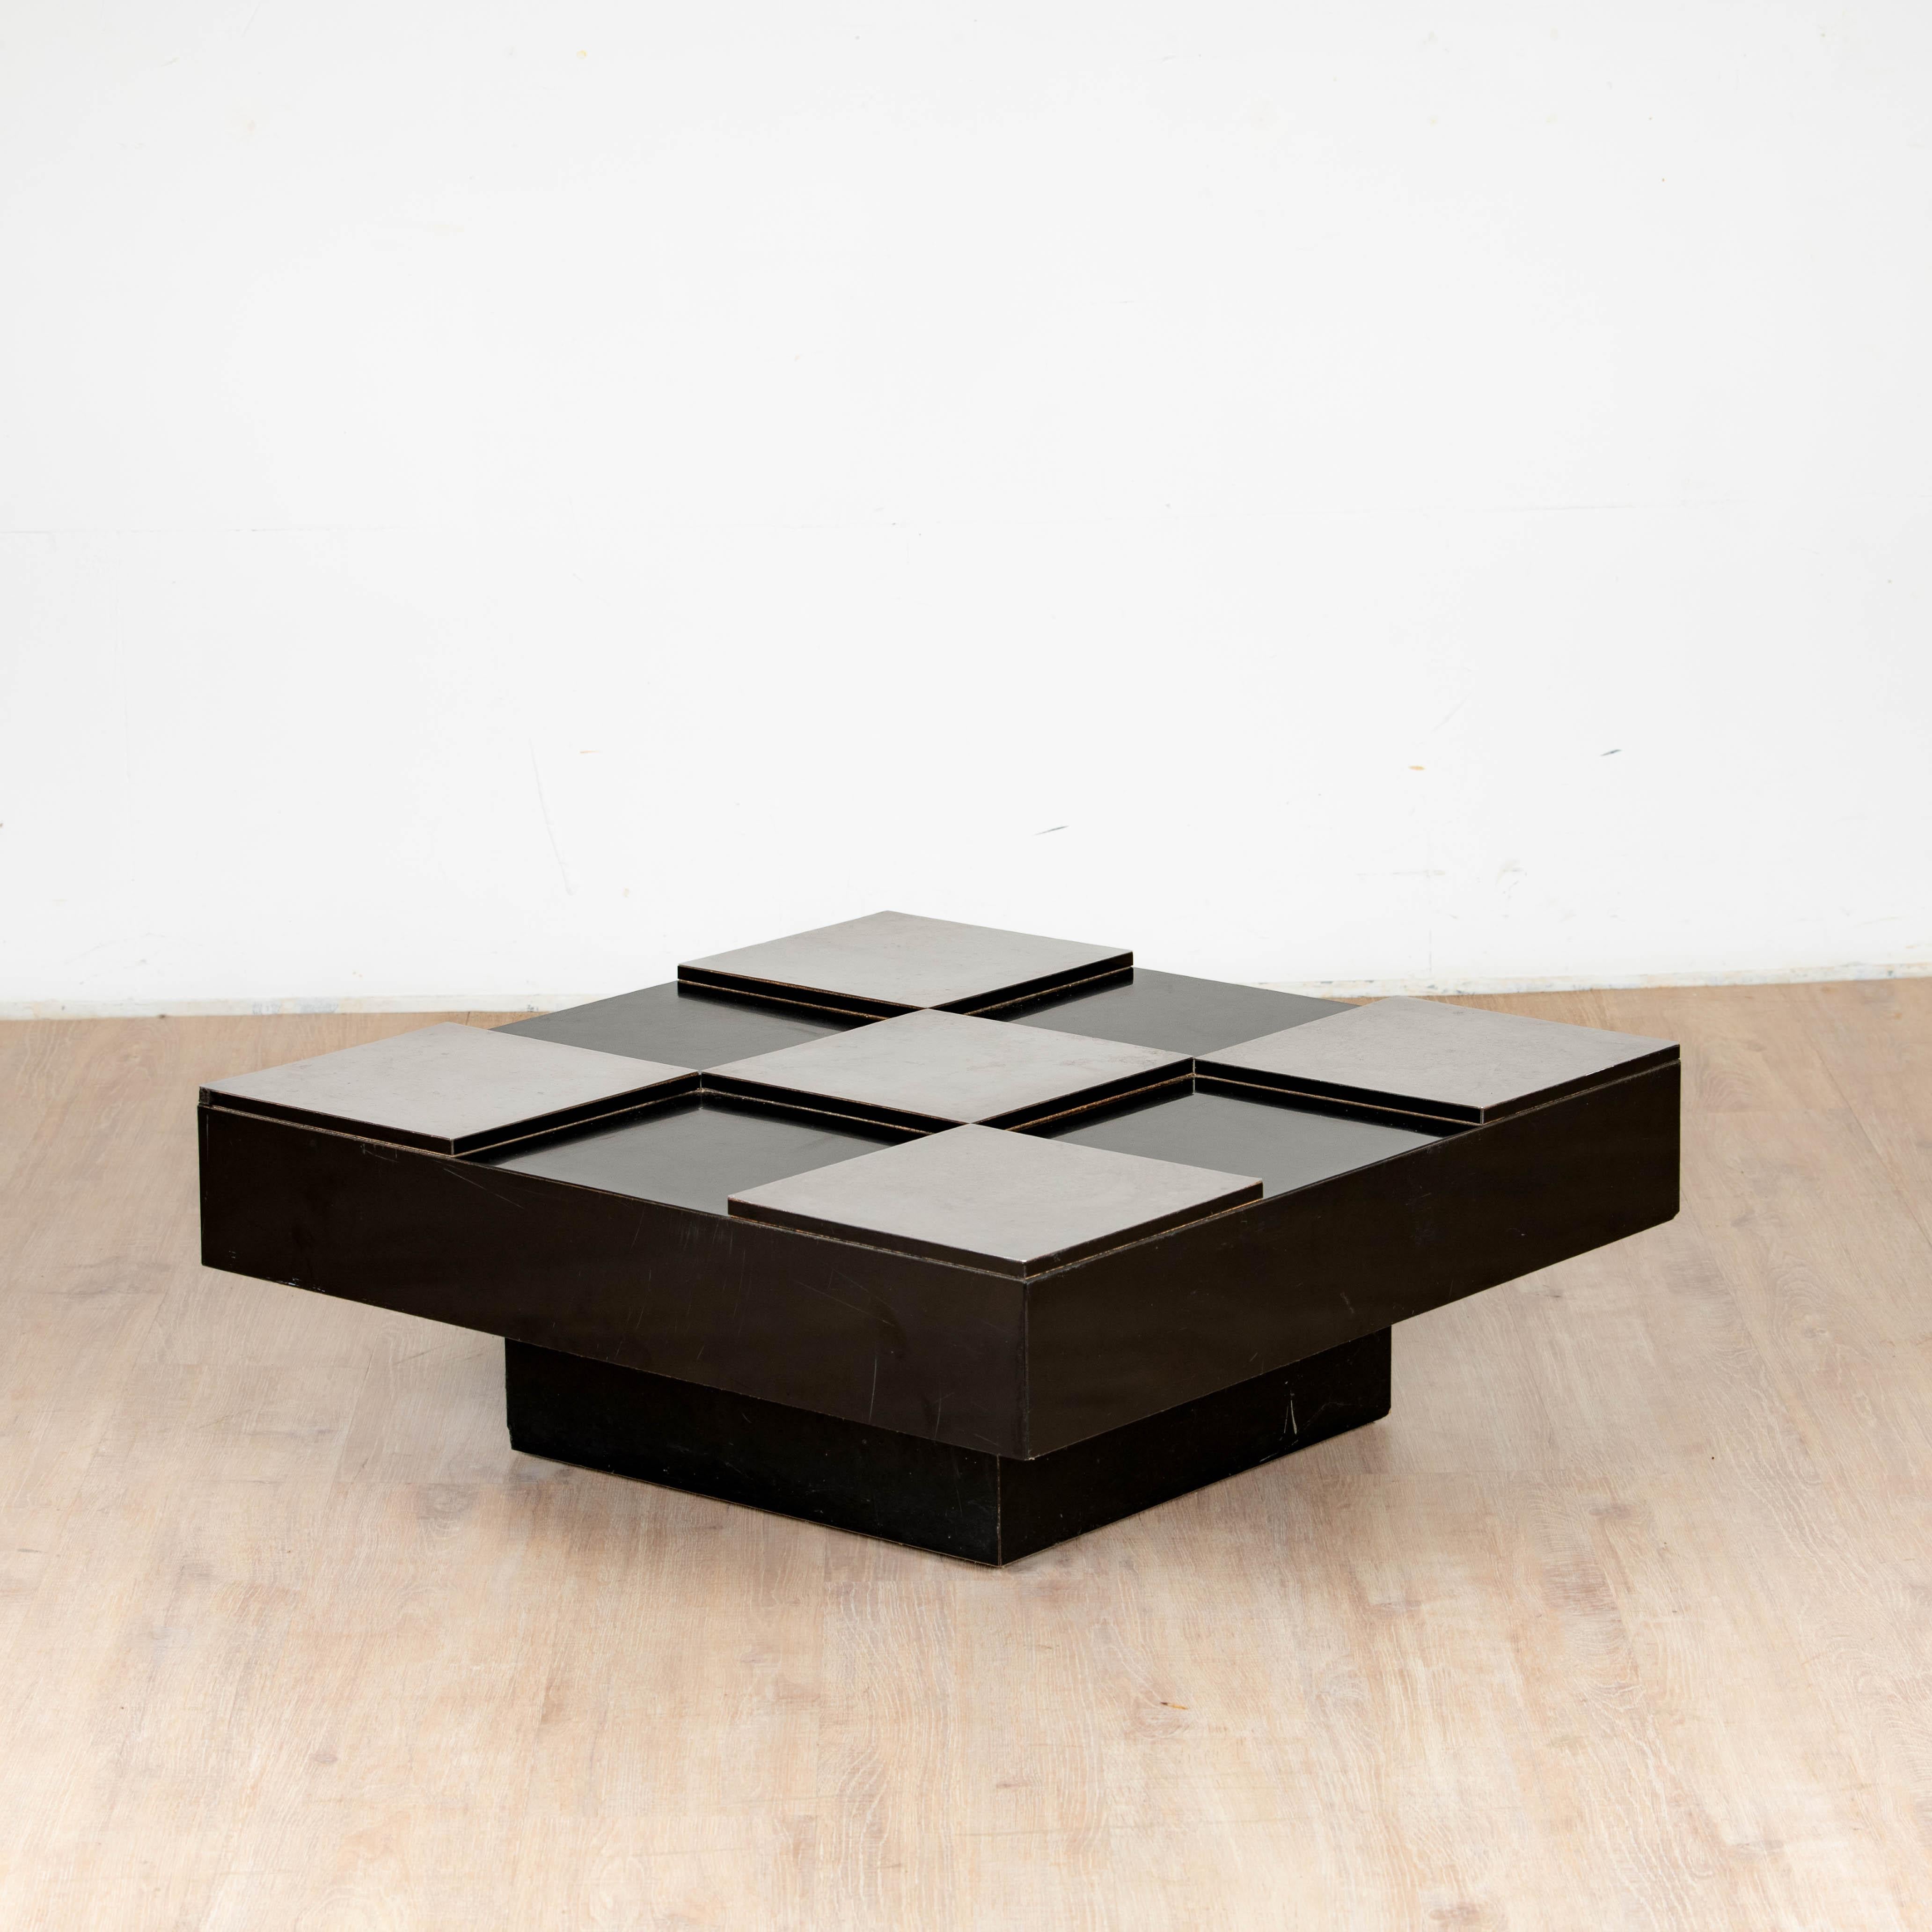 Table basse carré en mélaminé noir et métal chromé éditions Delmas France 1970.

hauteur 33 cm largeur 83 cm longueur 83 cm